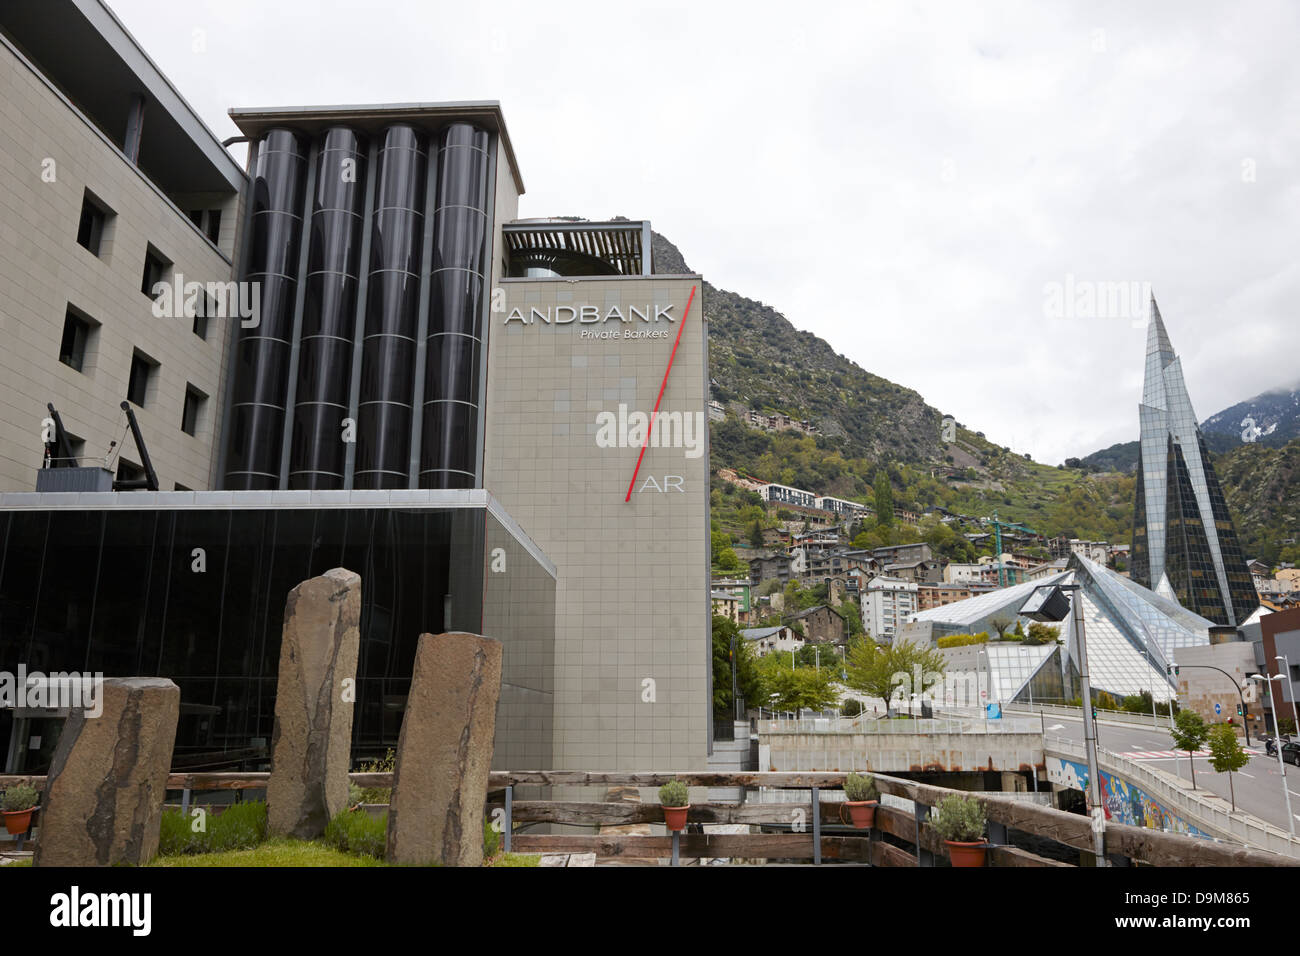 Andbank Privatbank und Caldea in Andorra la Vella Andorra Komplex Stockfoto